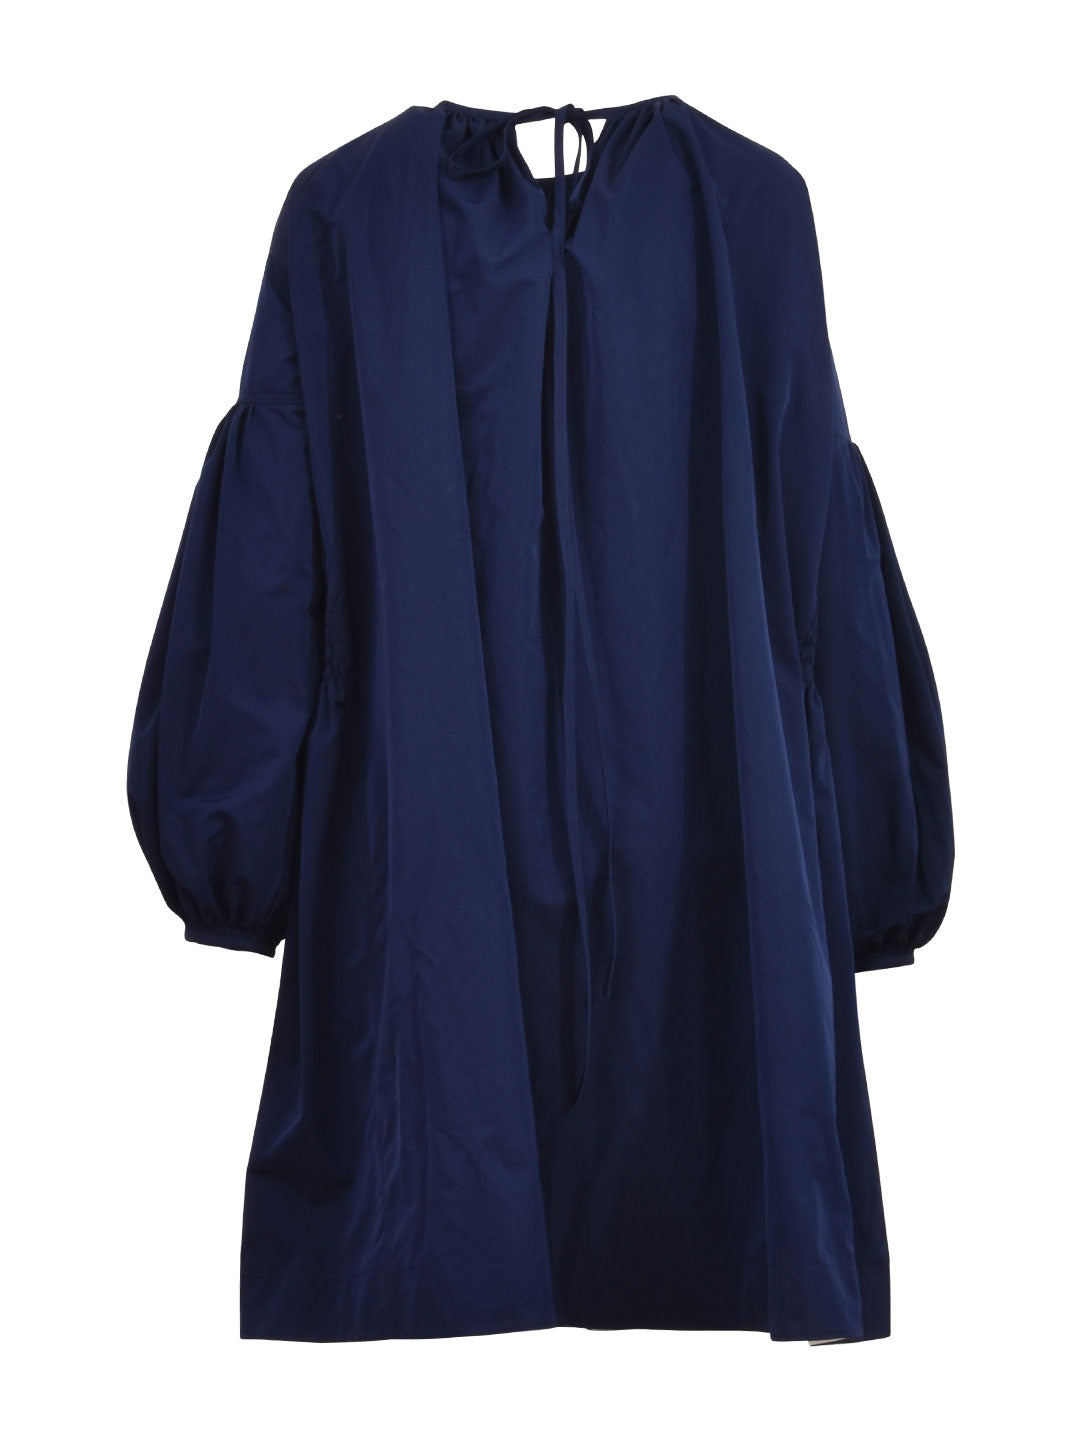 Lace Detail Bishop Dress